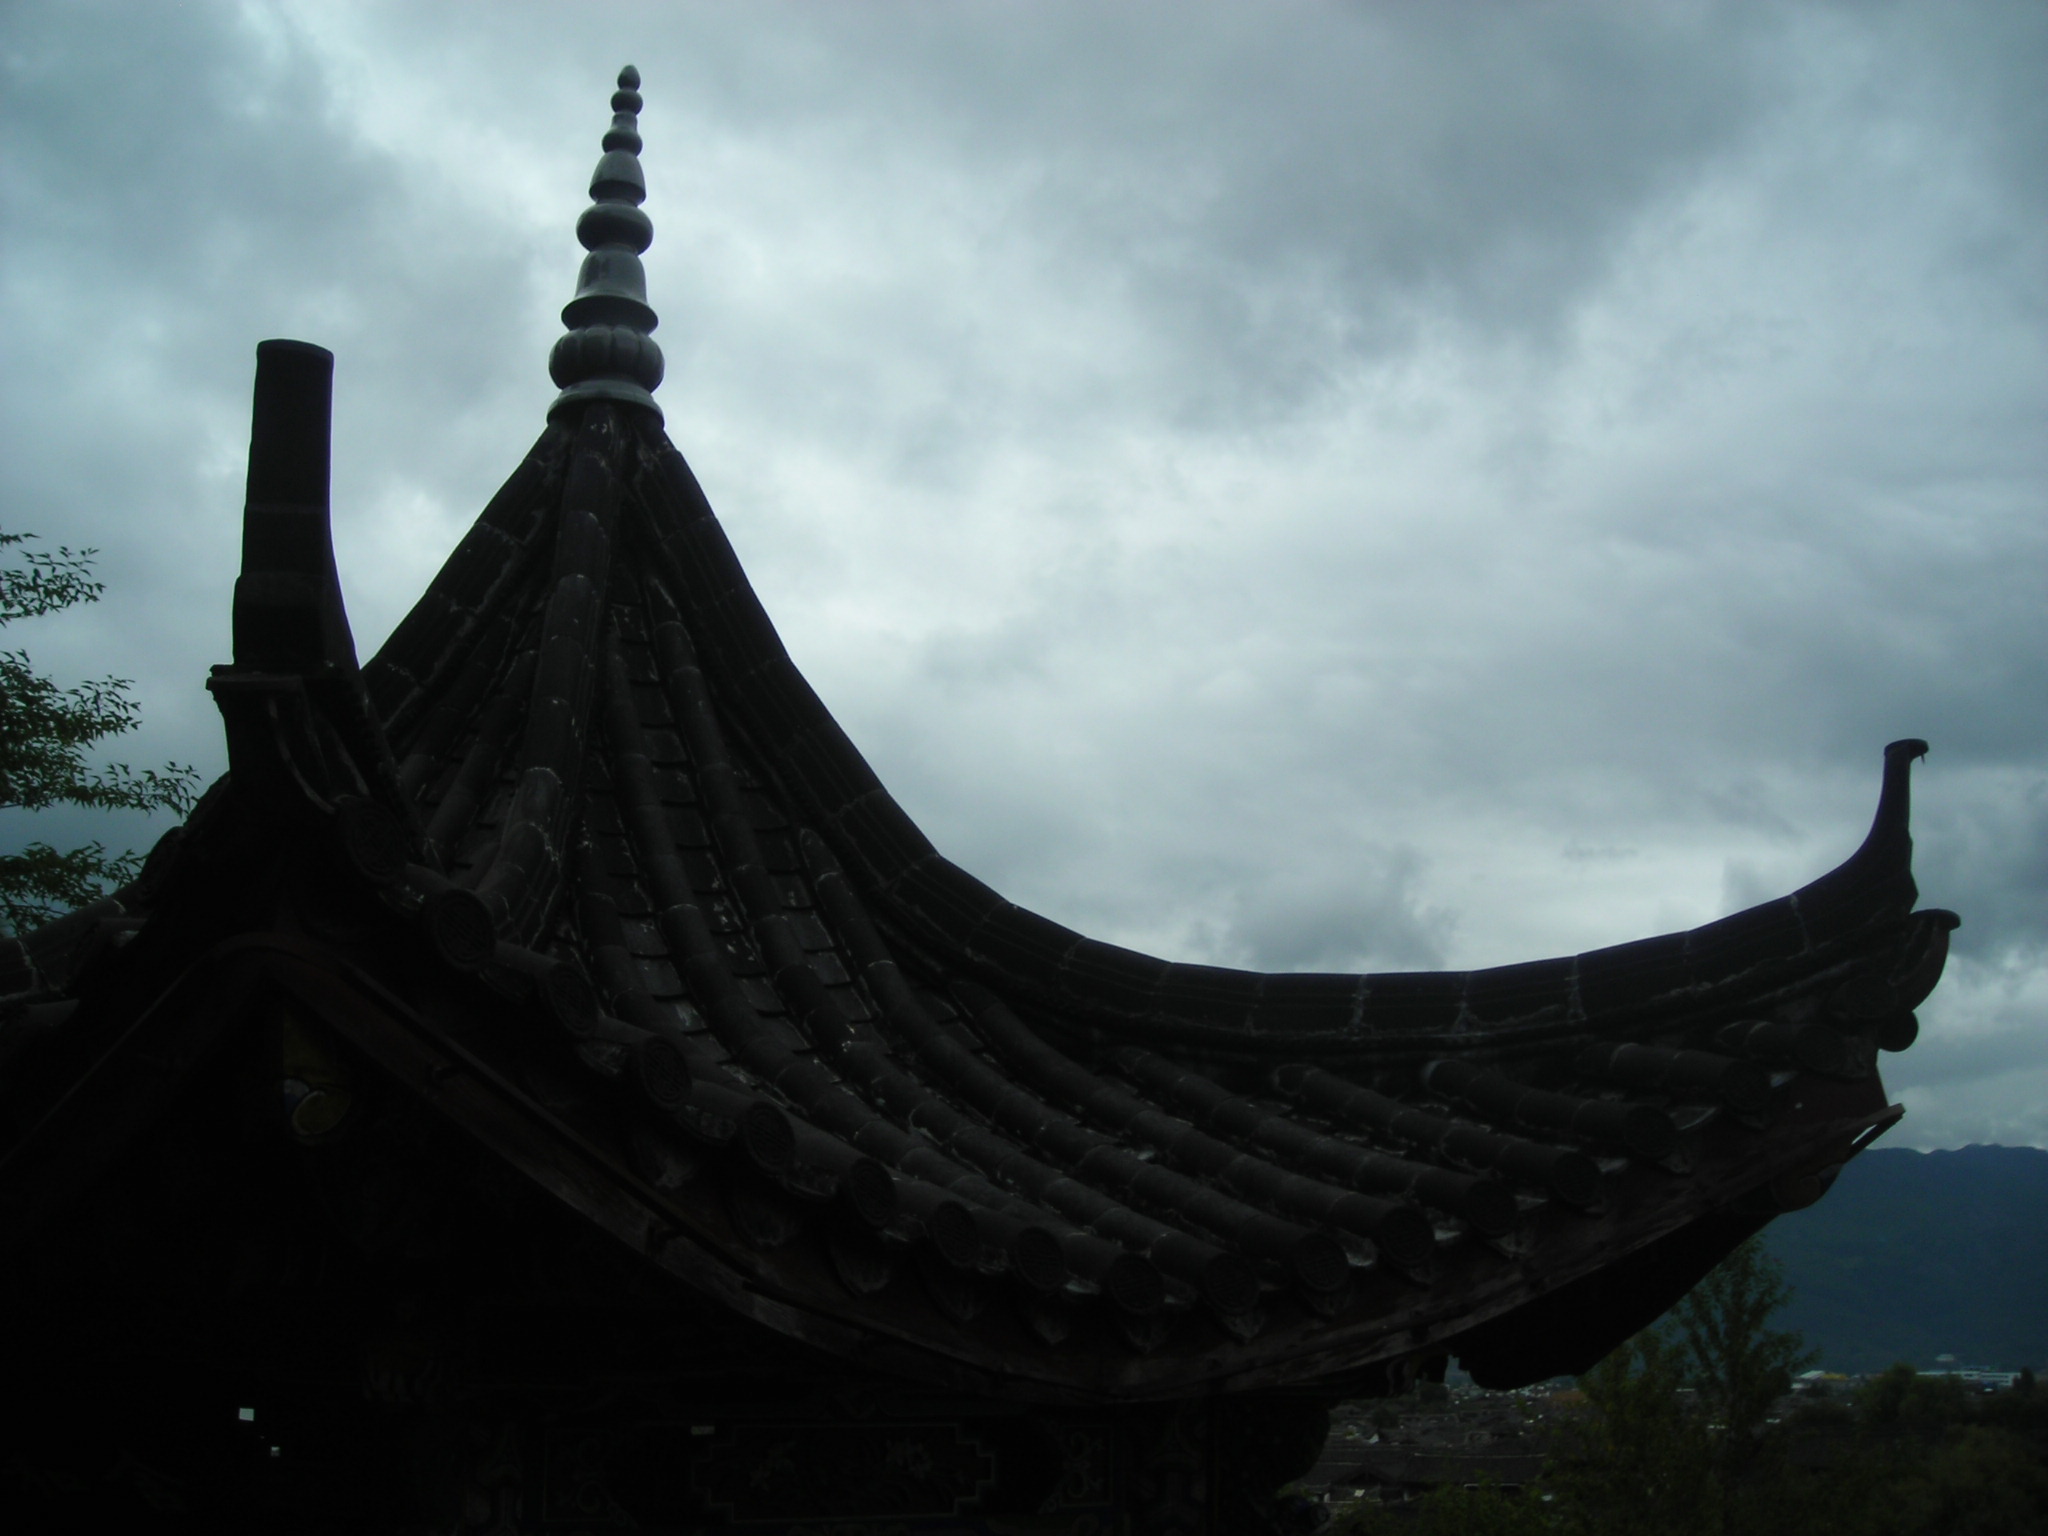 Lijiang, Mu gong